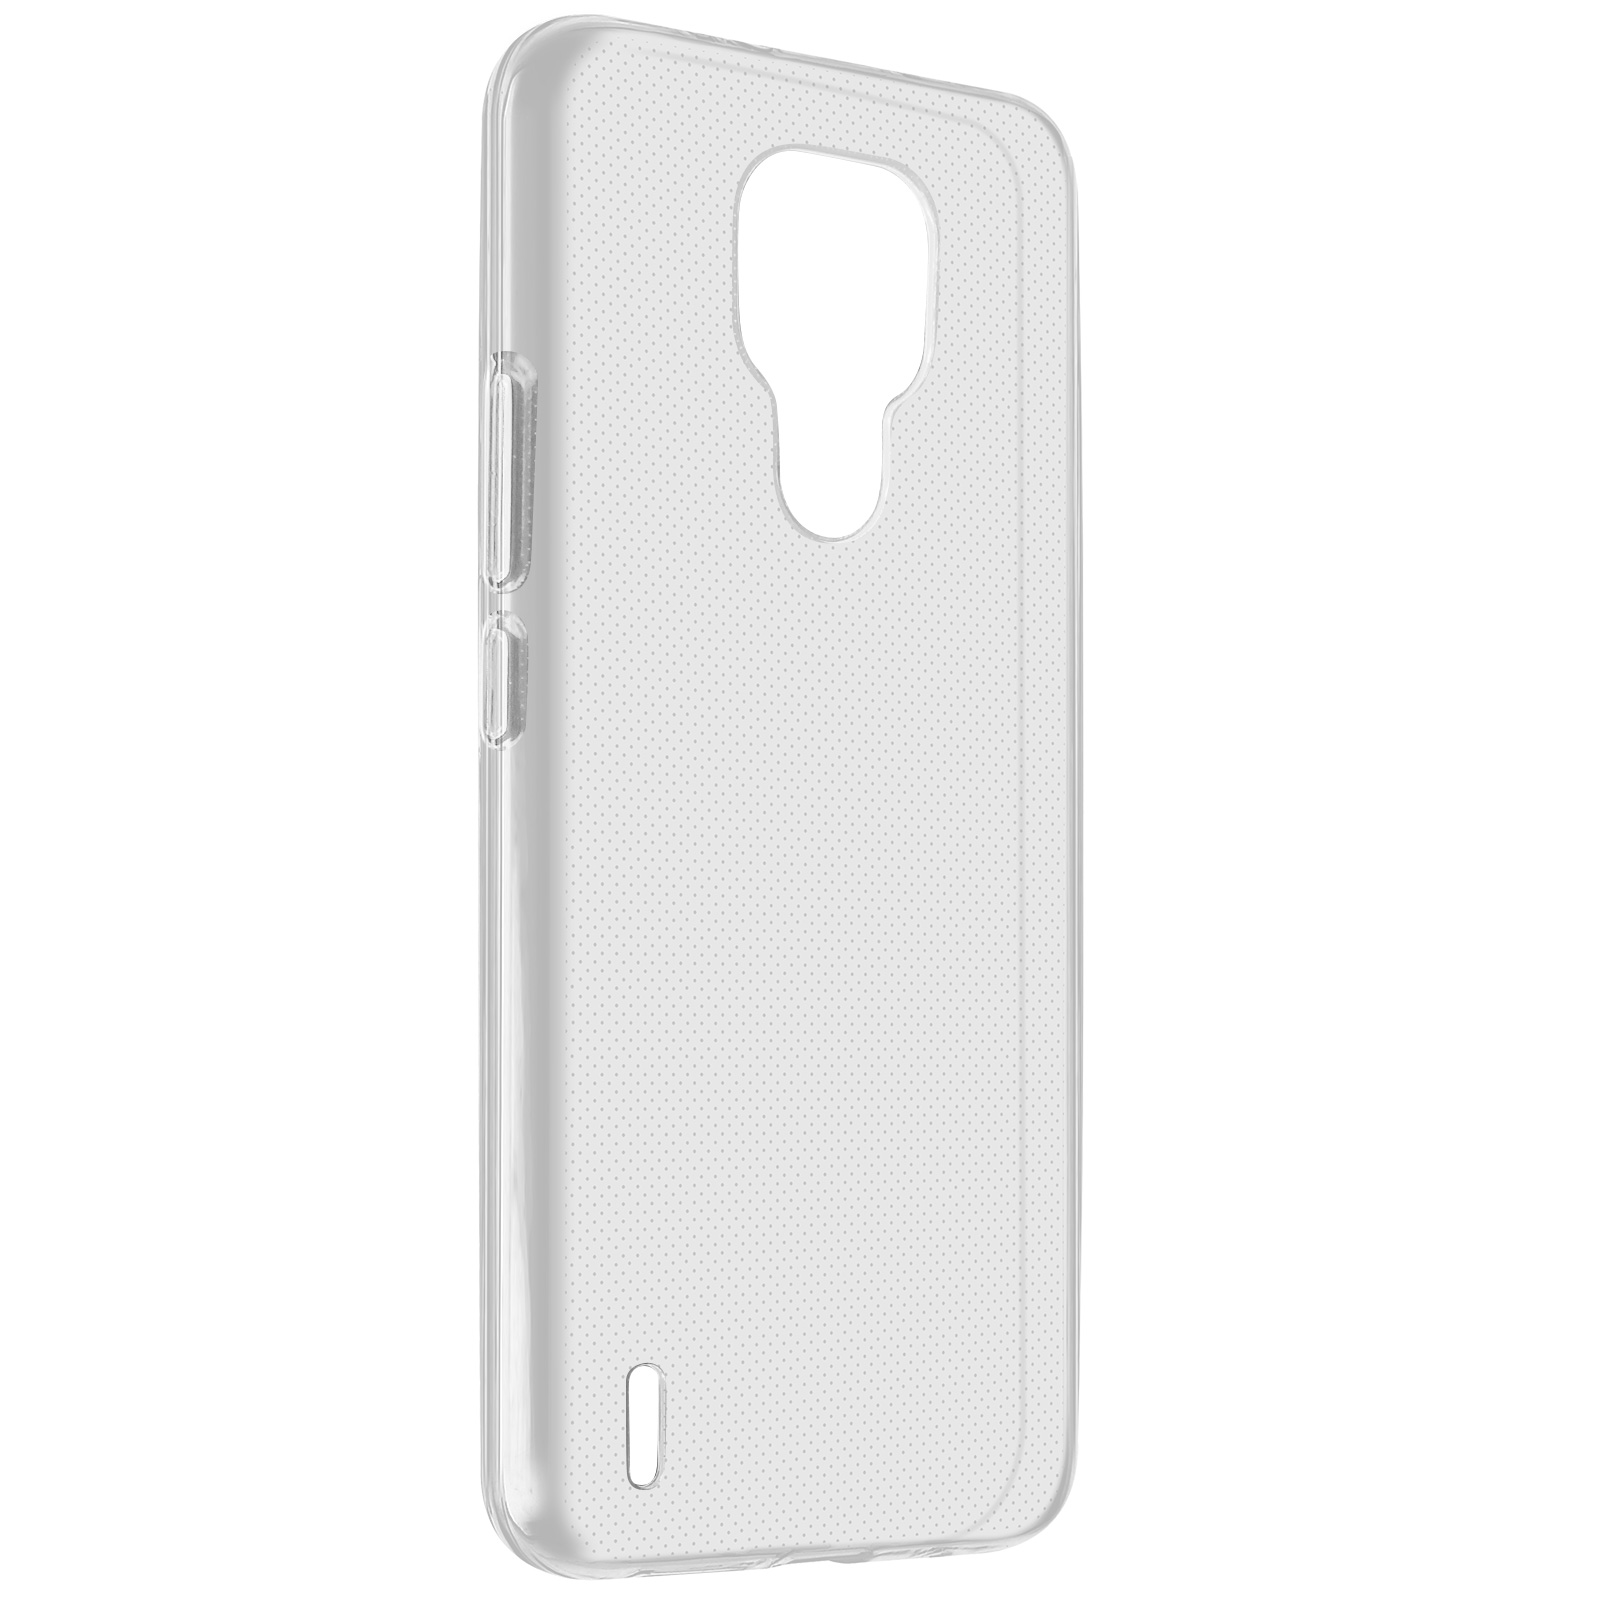 AVIZAR Skin Transparent E7, Motorola, Moto Backcover, Series